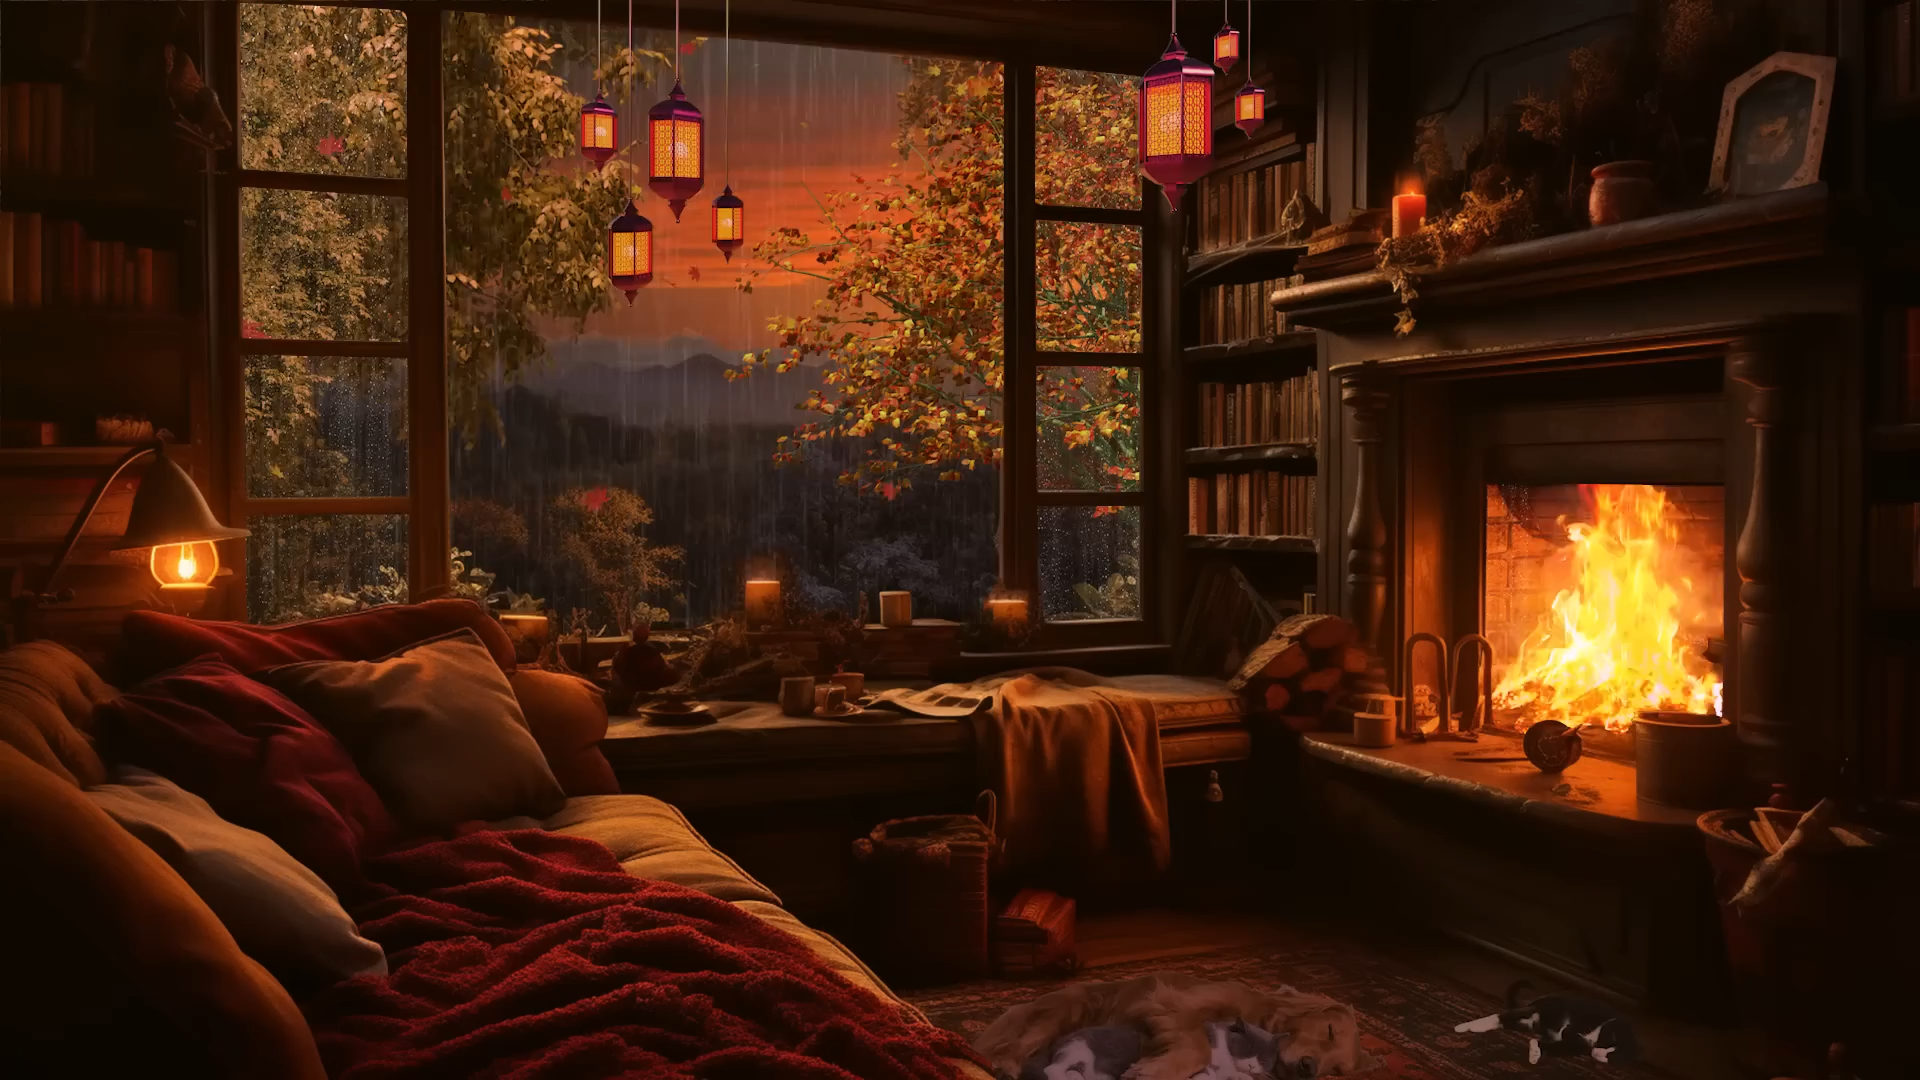 宁静的秋日傍晚壁炉和柔和的雨声 放松、睡眠或学习